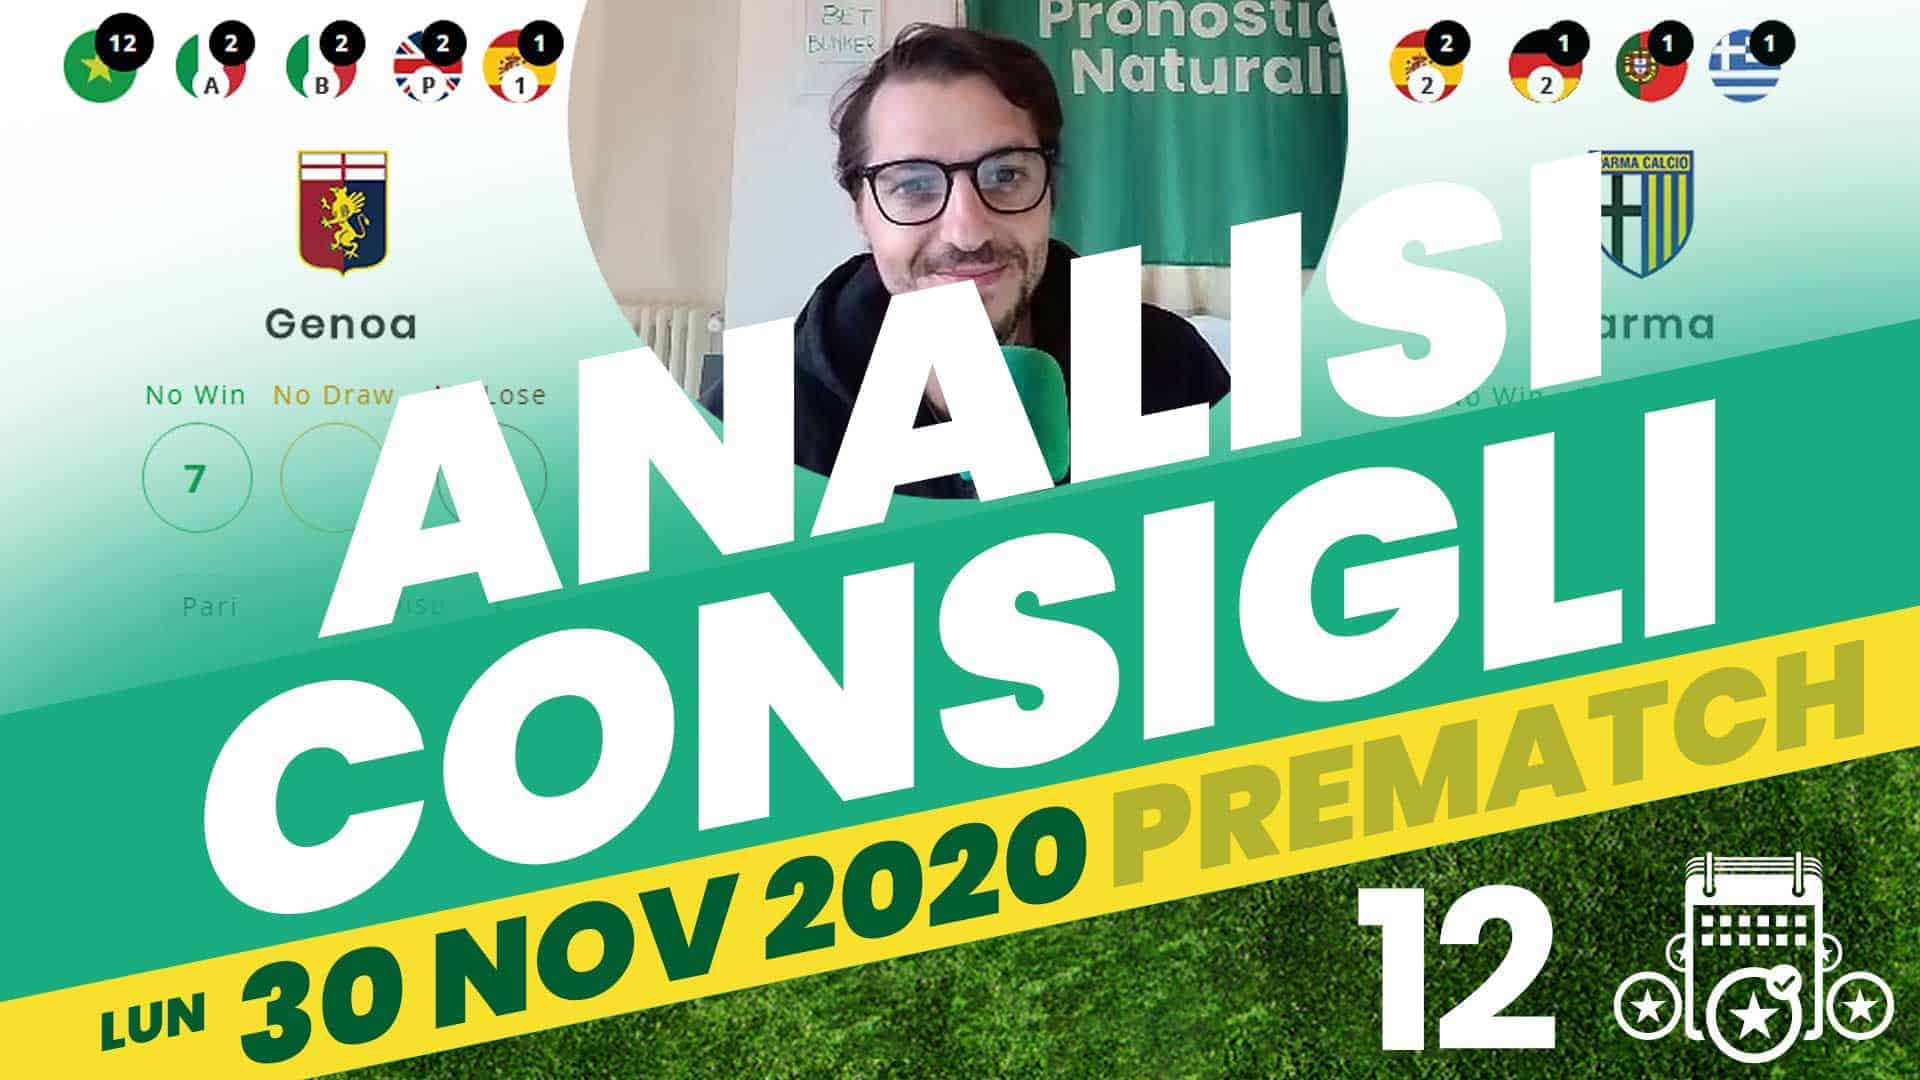 Pronostici Naturali Video Analisi Scommesse Betting Calcio Pre Partite Monday Night Lunedi 30 Novembre 2020